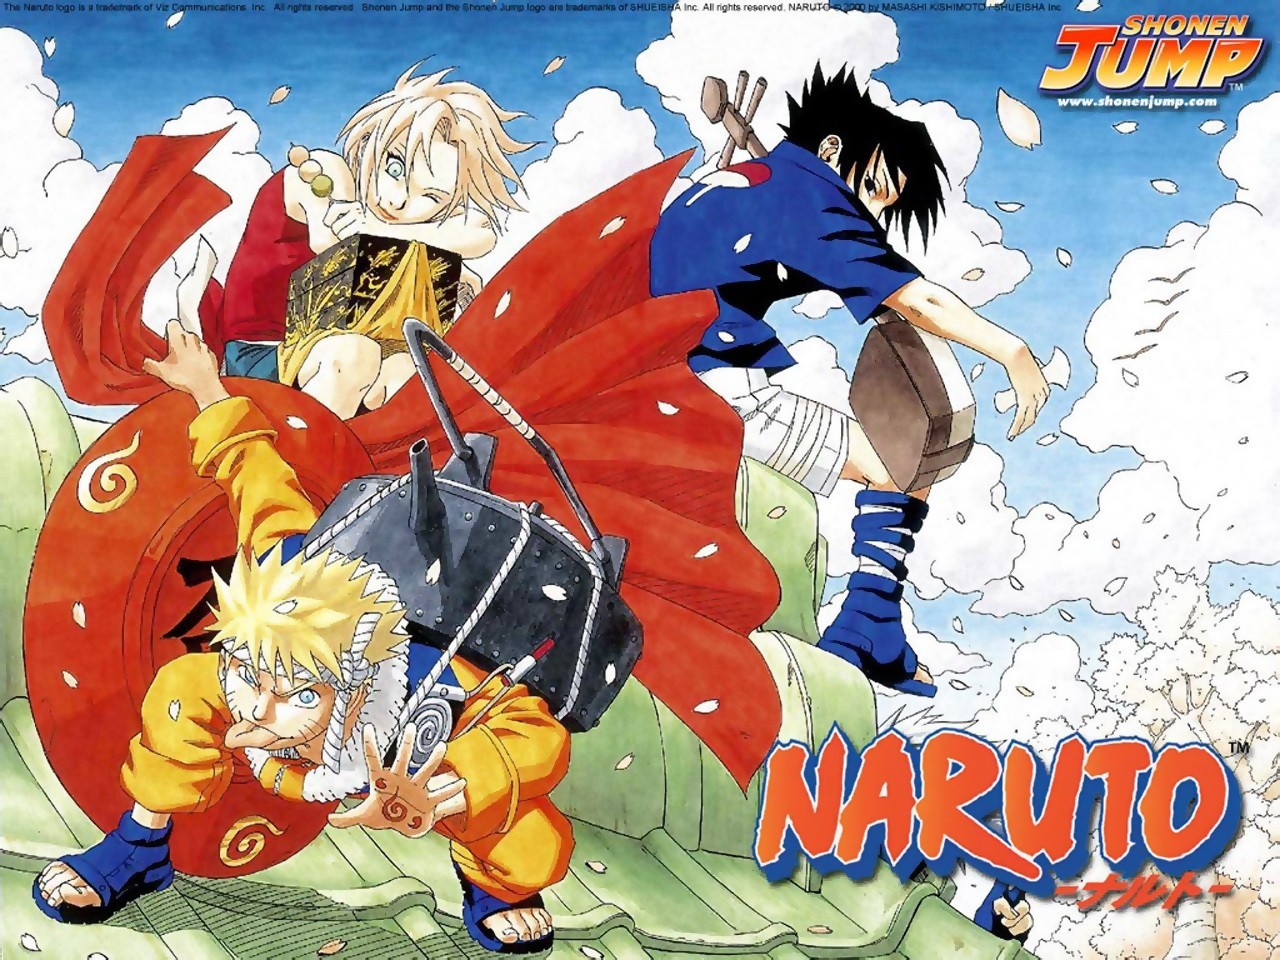 Naruto & Sakura & Sasuke by Masashi Kishimoto - Image Abyss